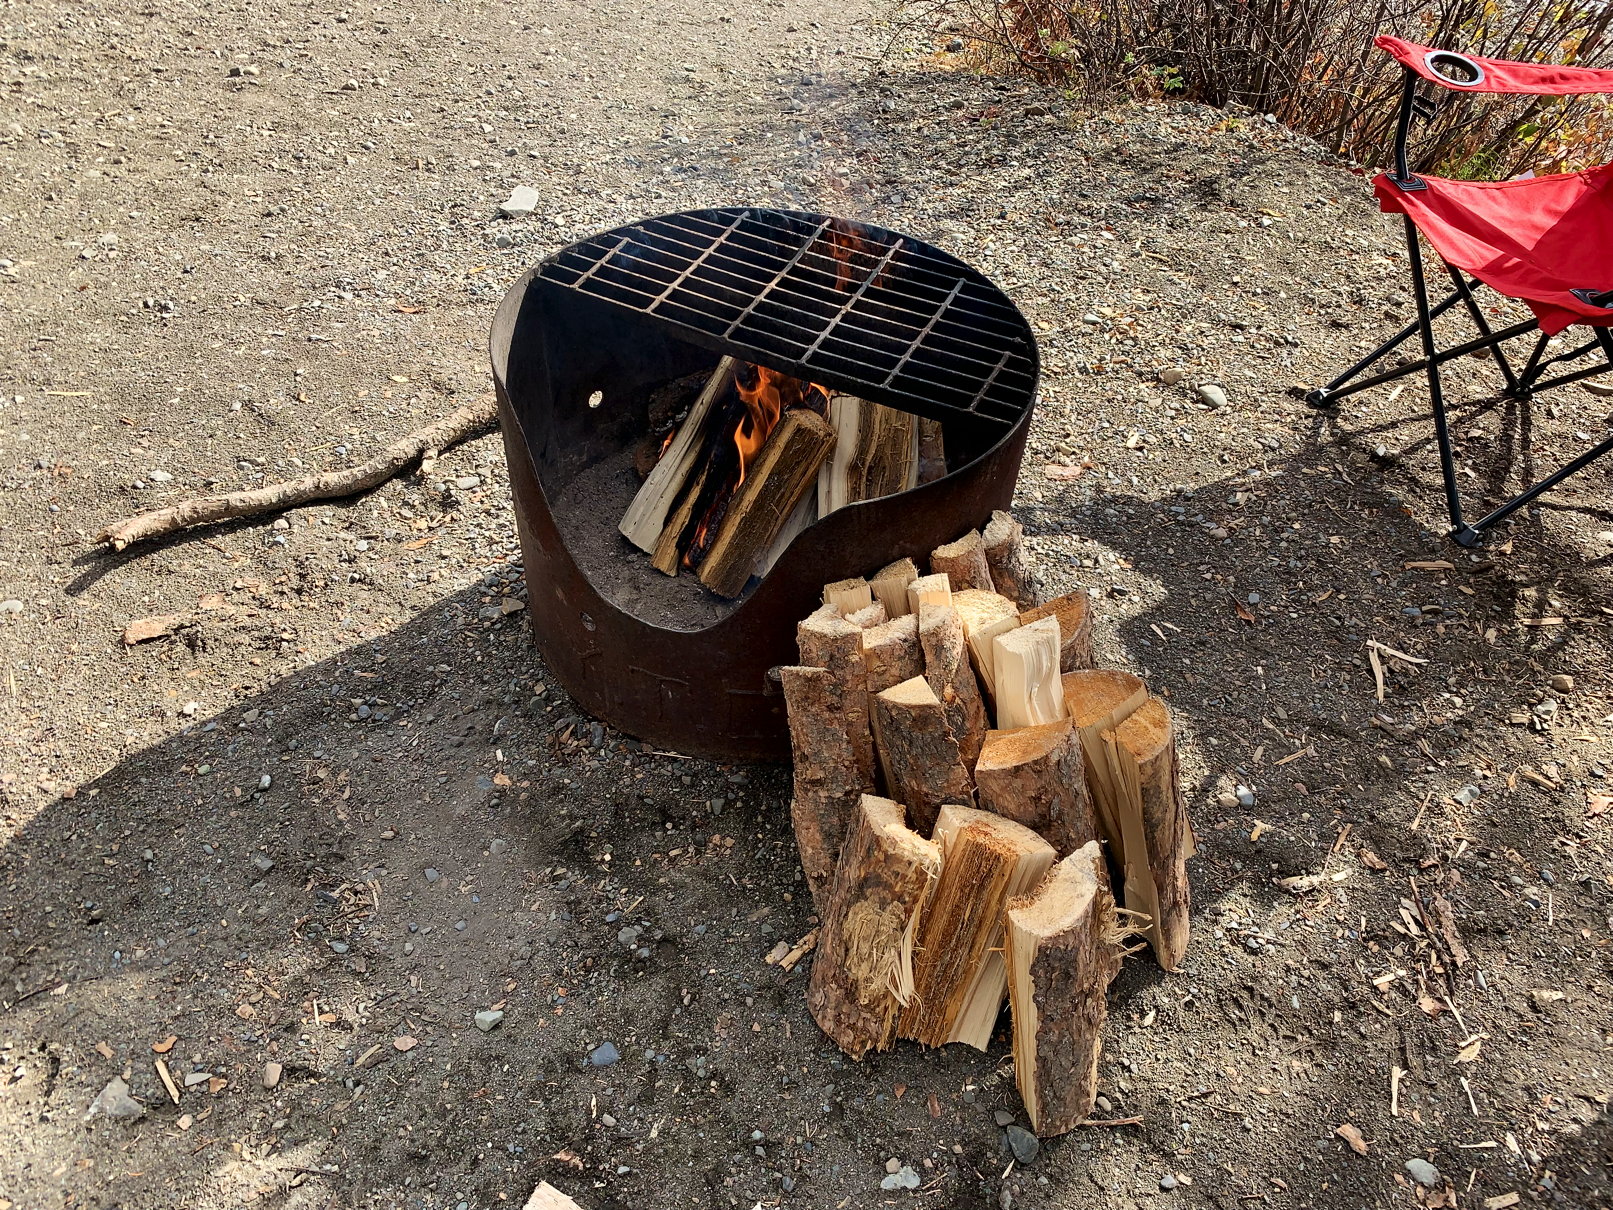 Das Feuer im Grill brennt, genügend Holz lagert daneben, im Hintergrund ein Campingstuhl